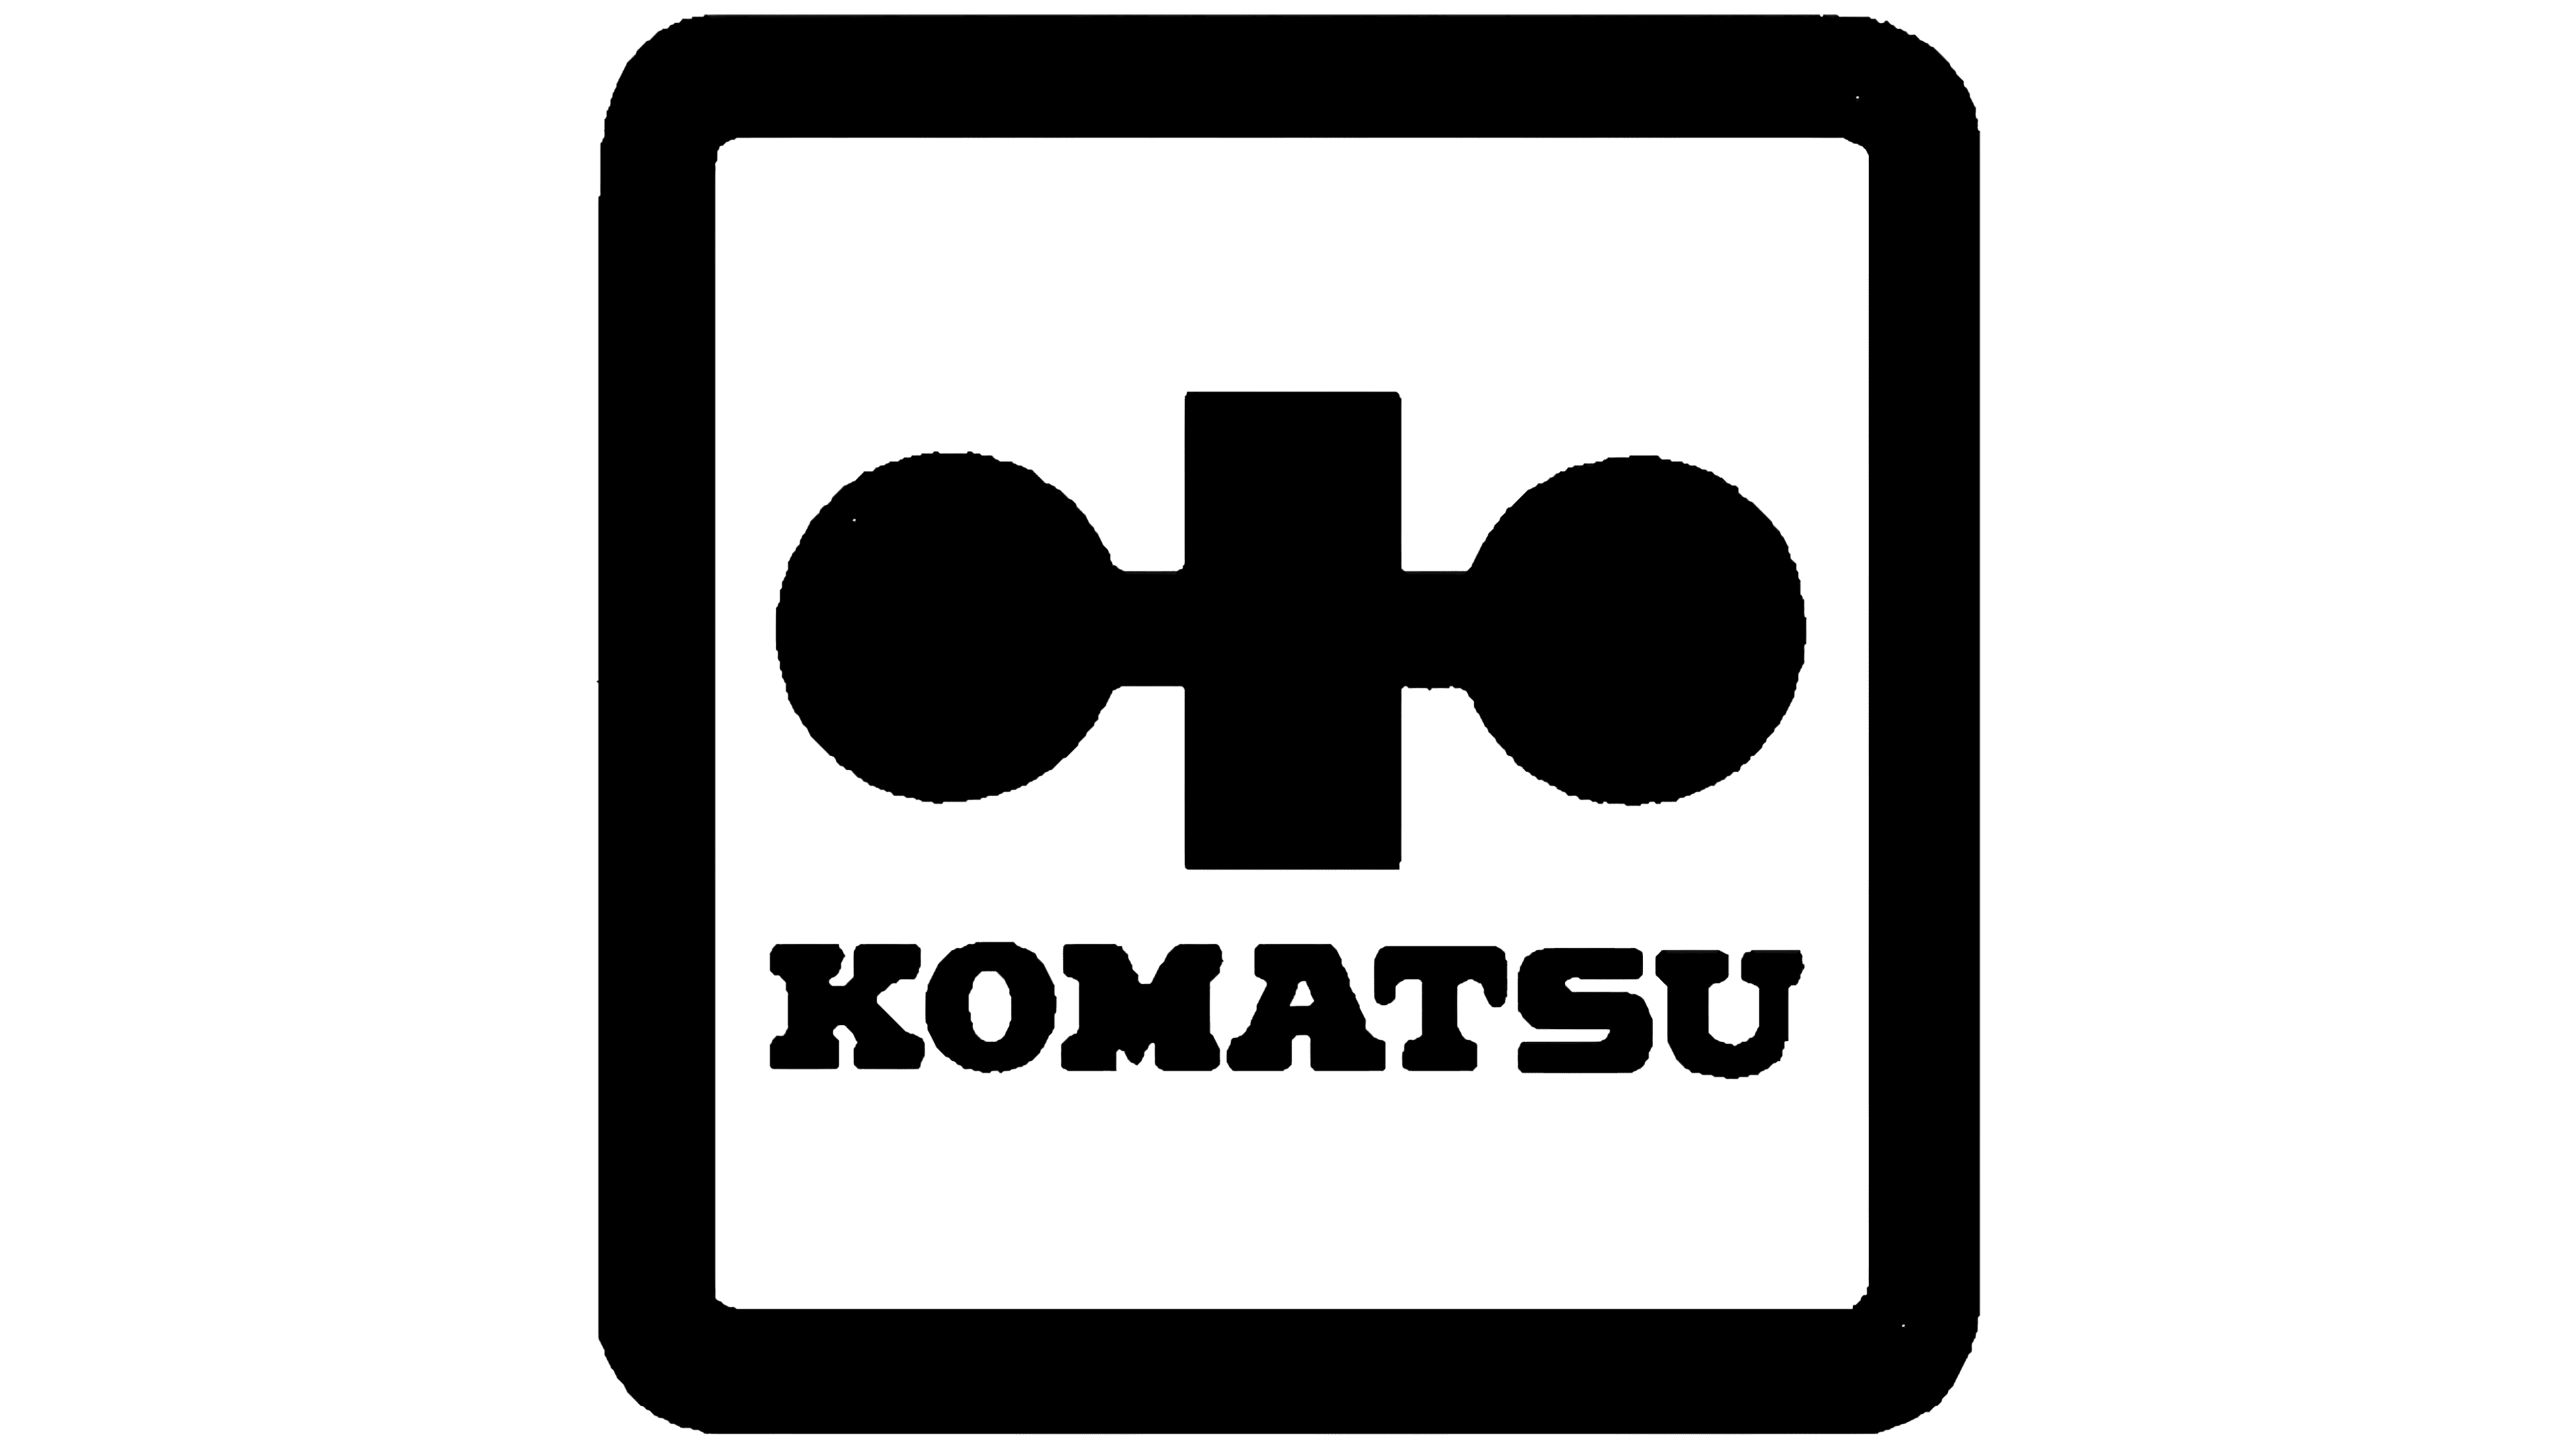 komatsu logo